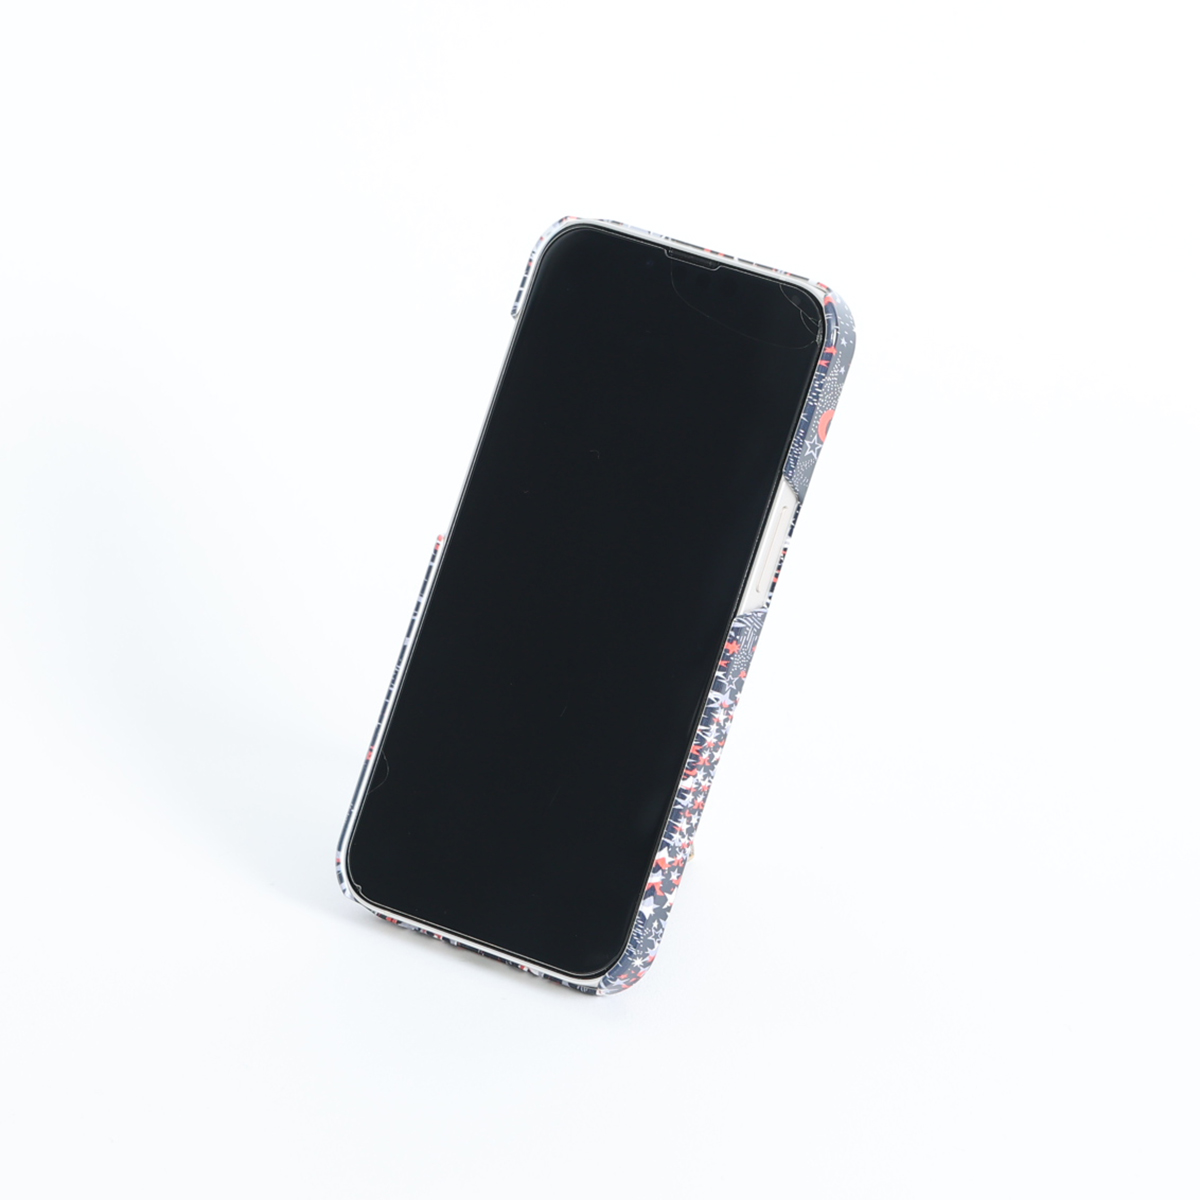 11月下旬お届け予定ご受注商品『Have a nice day BLACK』 iphone hard case画像